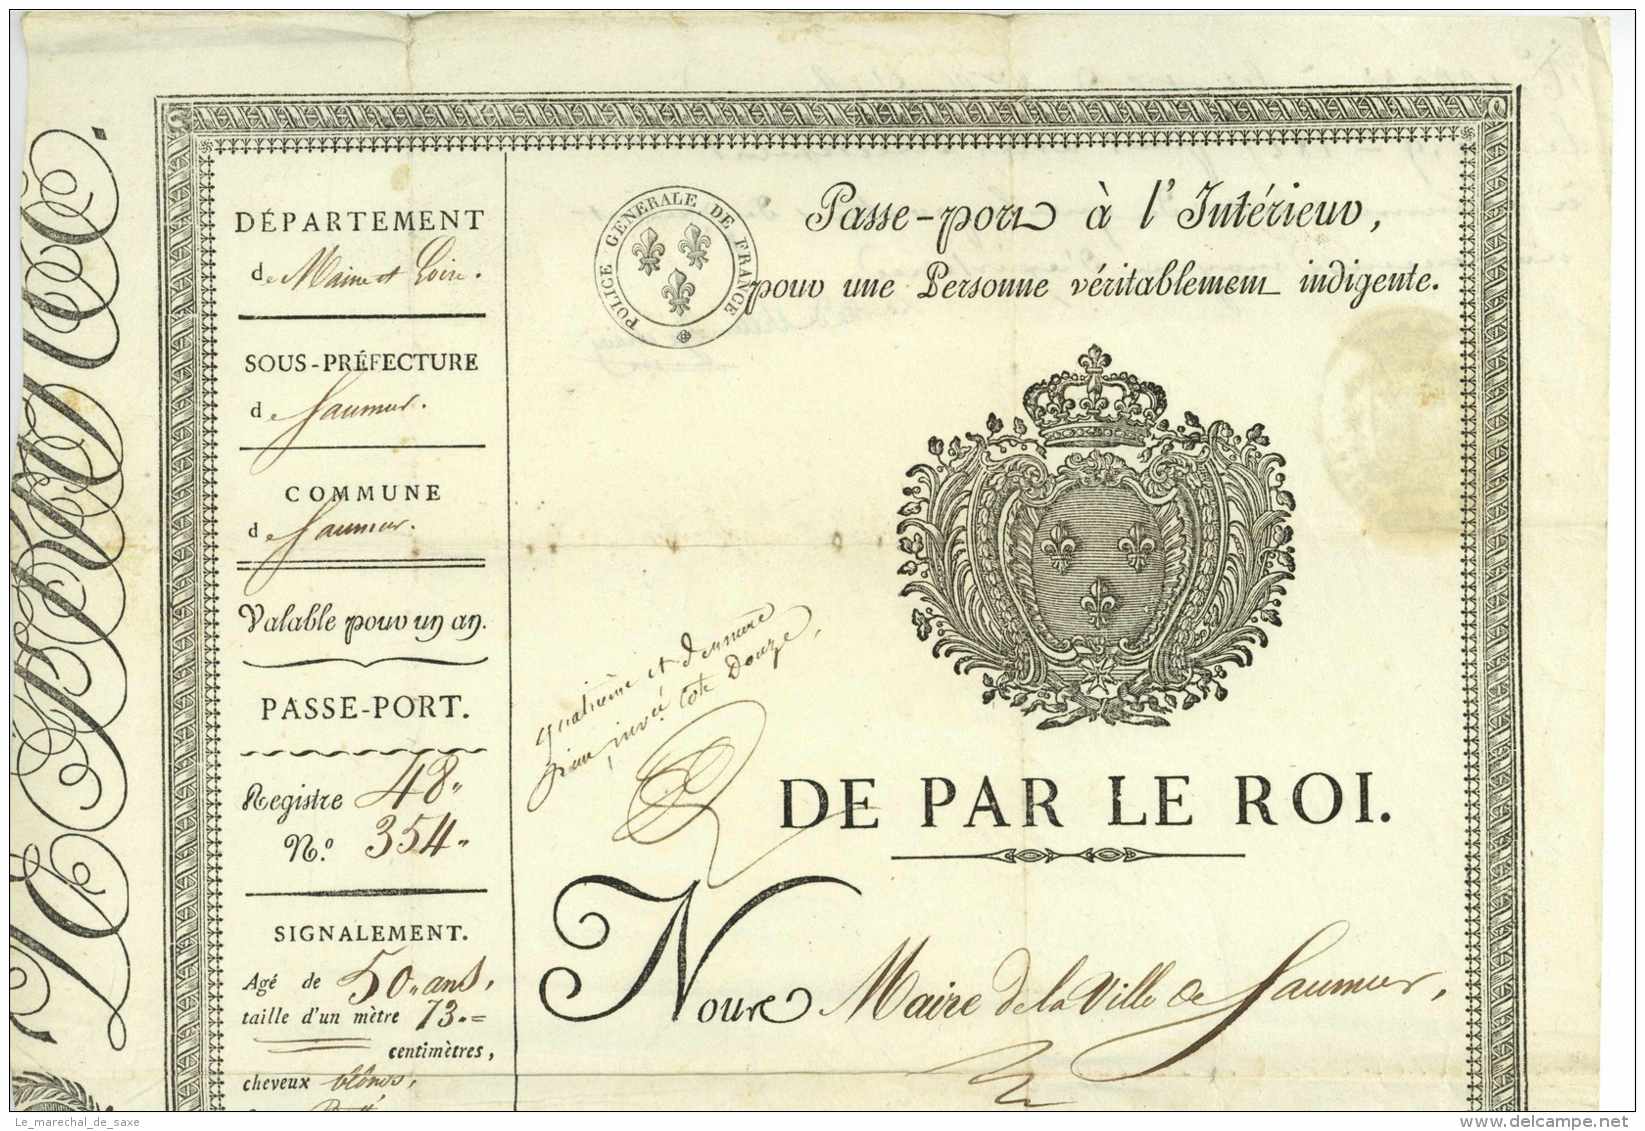 Pierre-Francois PERON (1769-1840) Aventurier / P. Brillet De VILLEMORGE (1770-1836) Maire D'Angers - Passeport Saumur 18 - Historische Dokumente